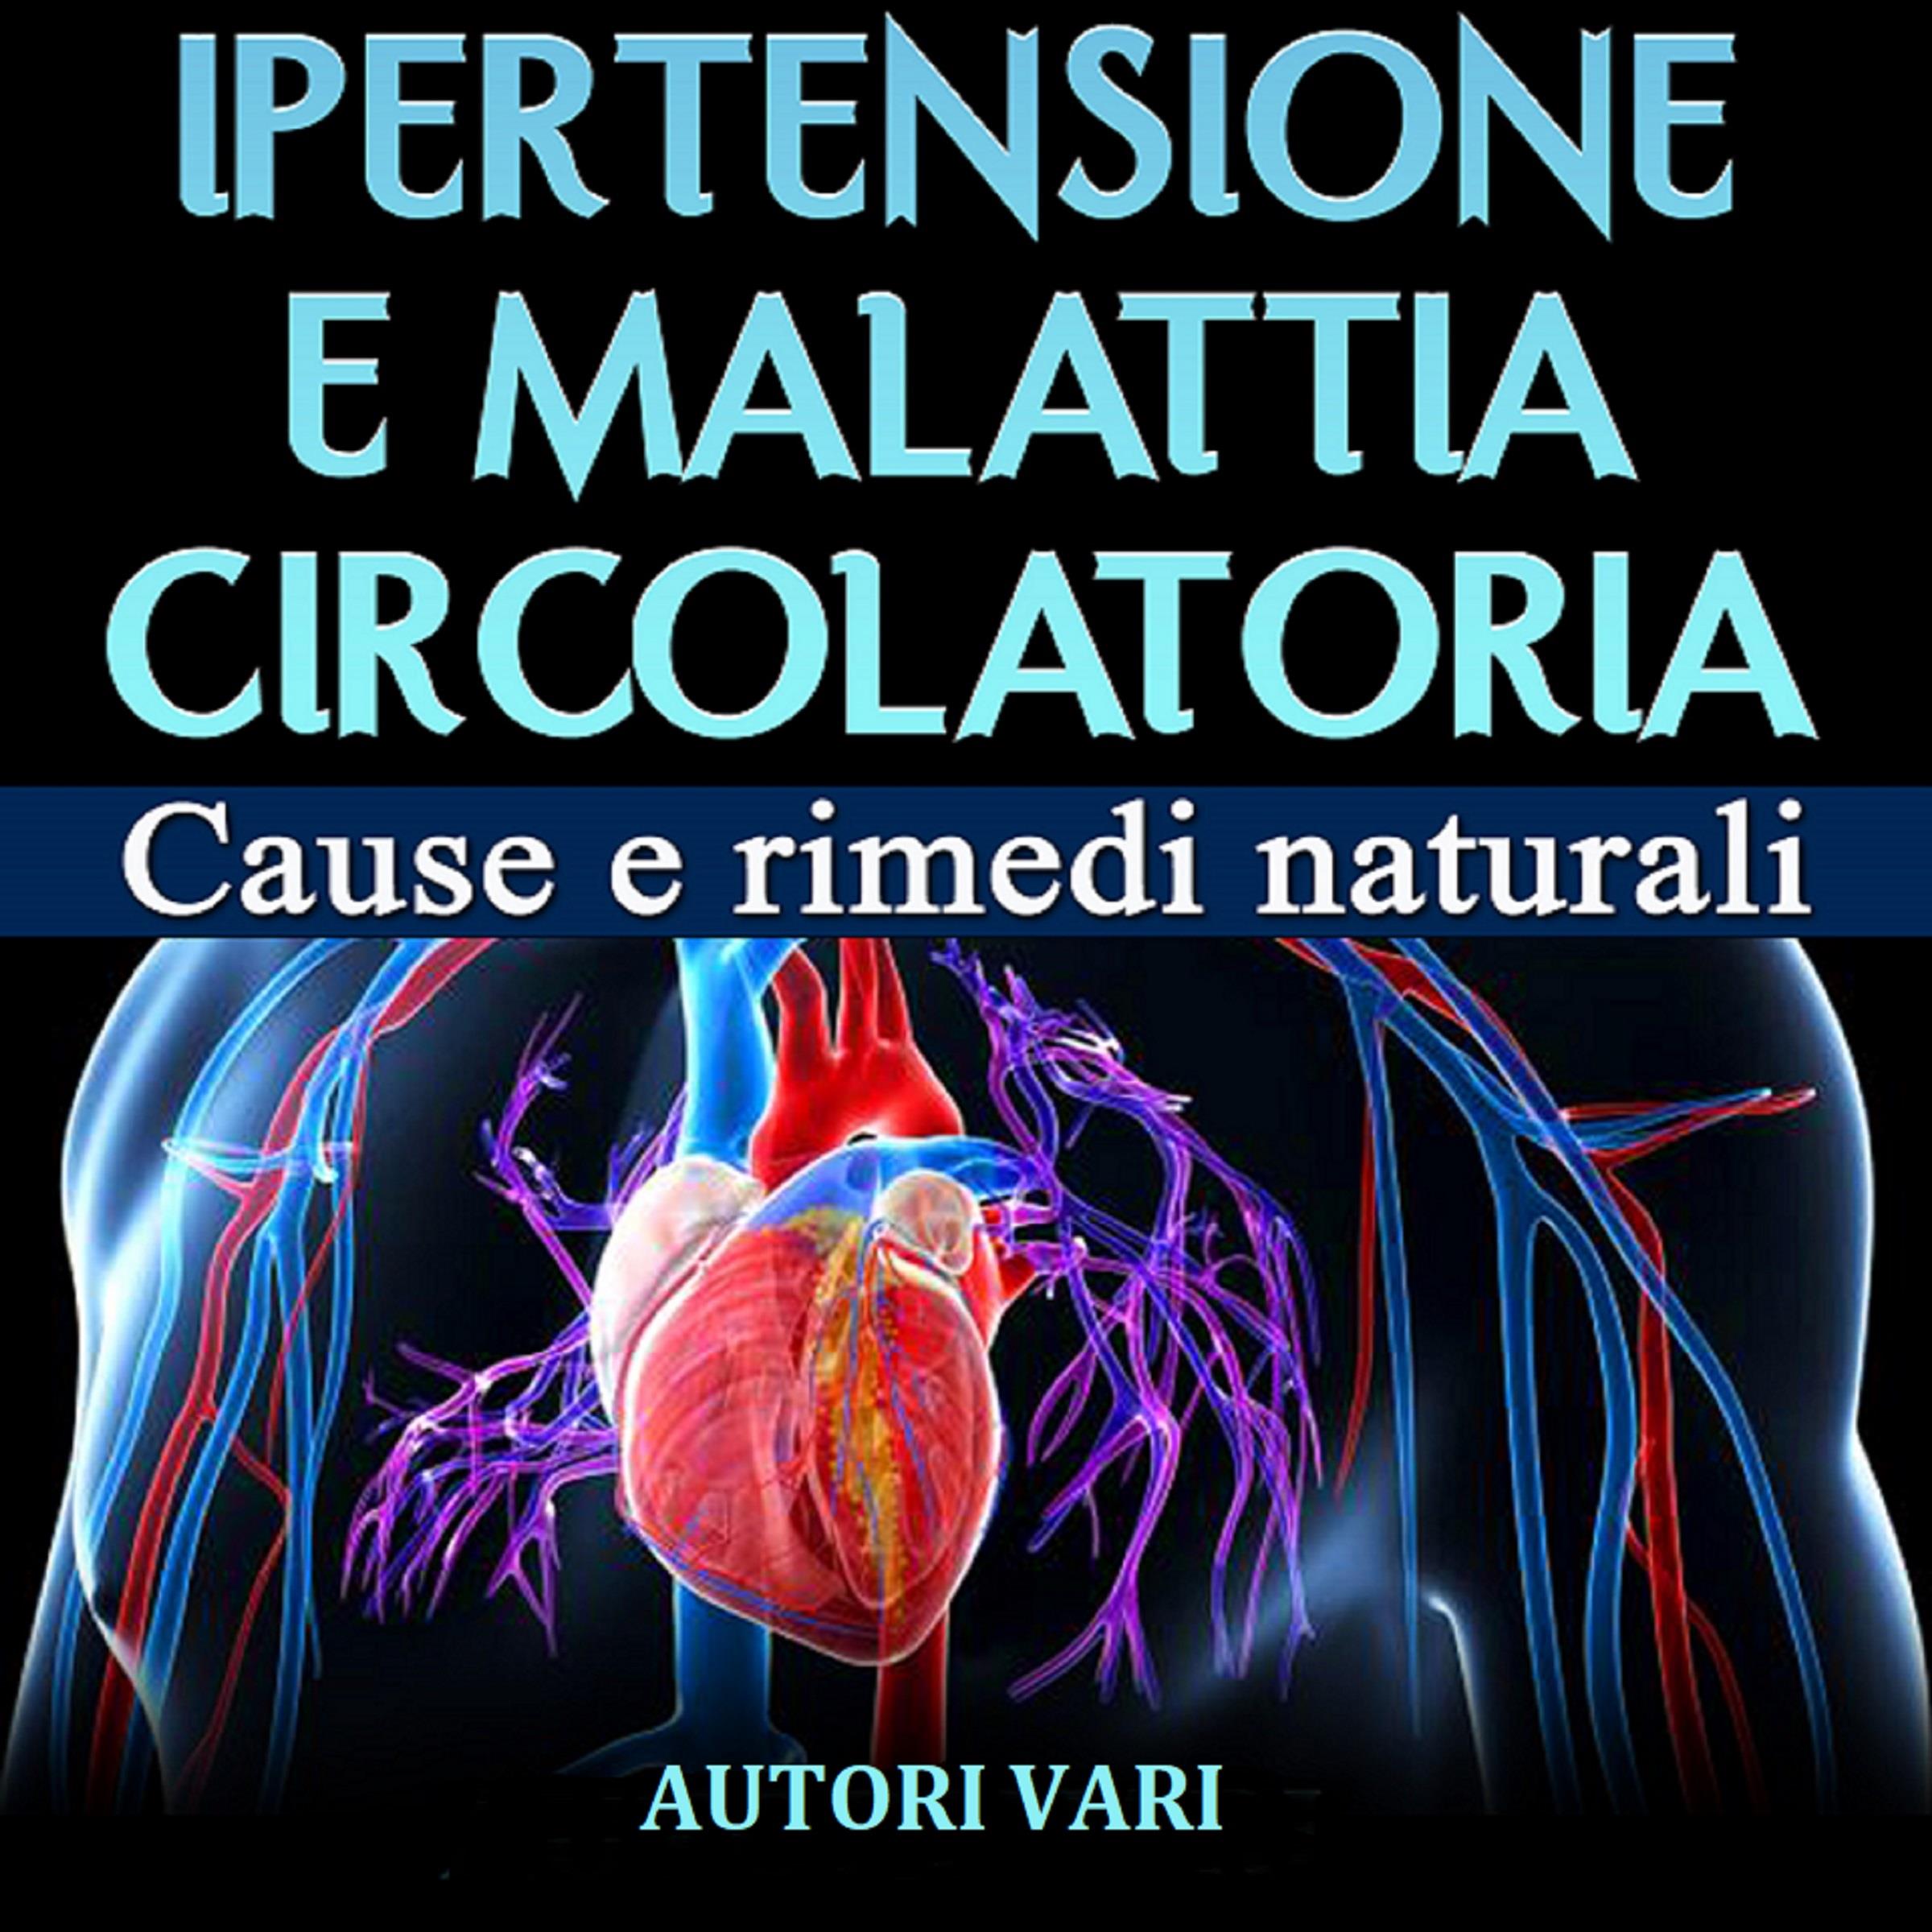 Ipertensione e malattia circolatoria